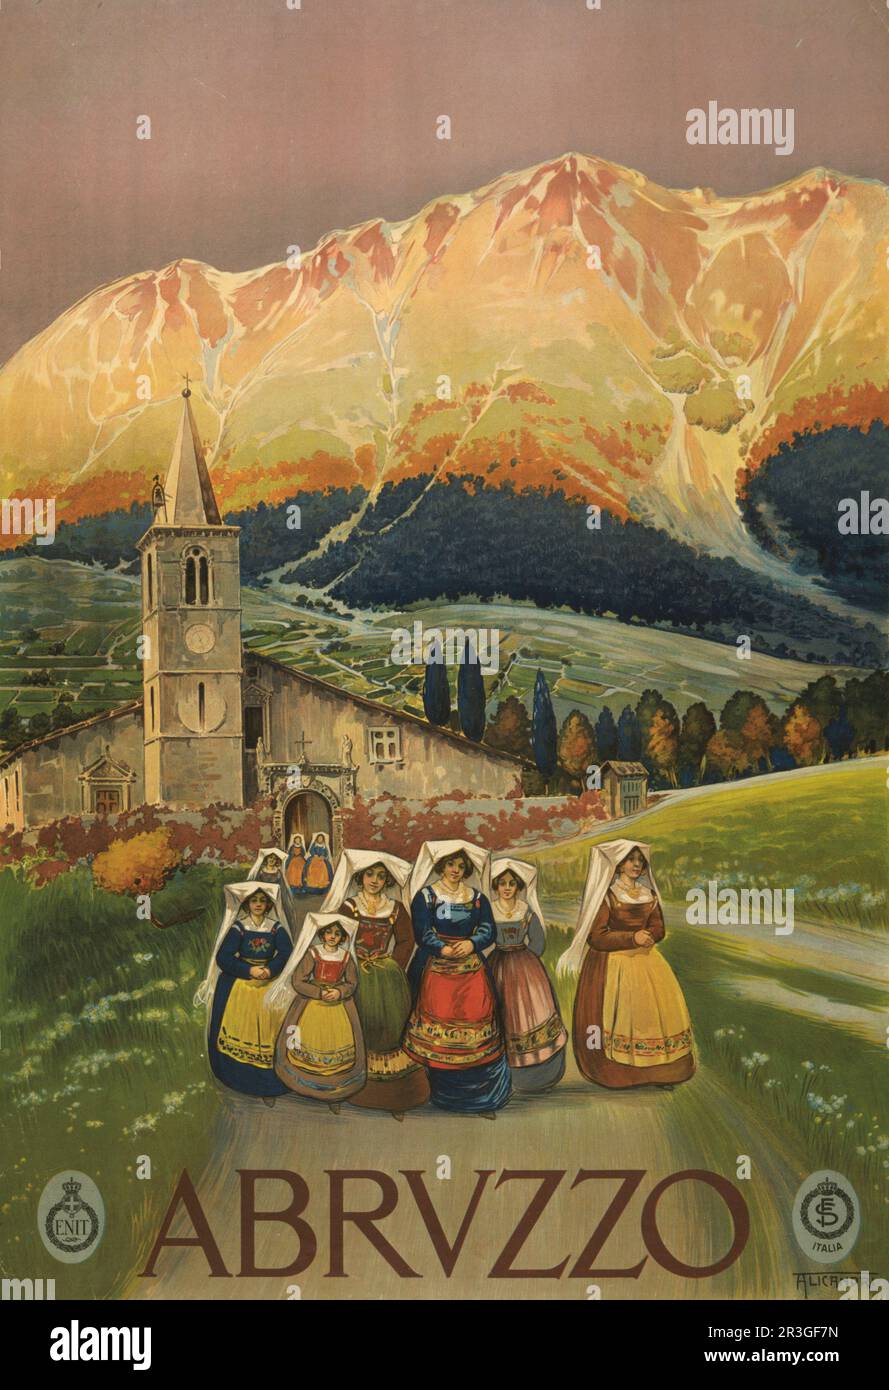 Abruzzes, Italie. Affiche de voyage vintage montrant un groupe de femmes quittant une église, vers 1920. Banque D'Images